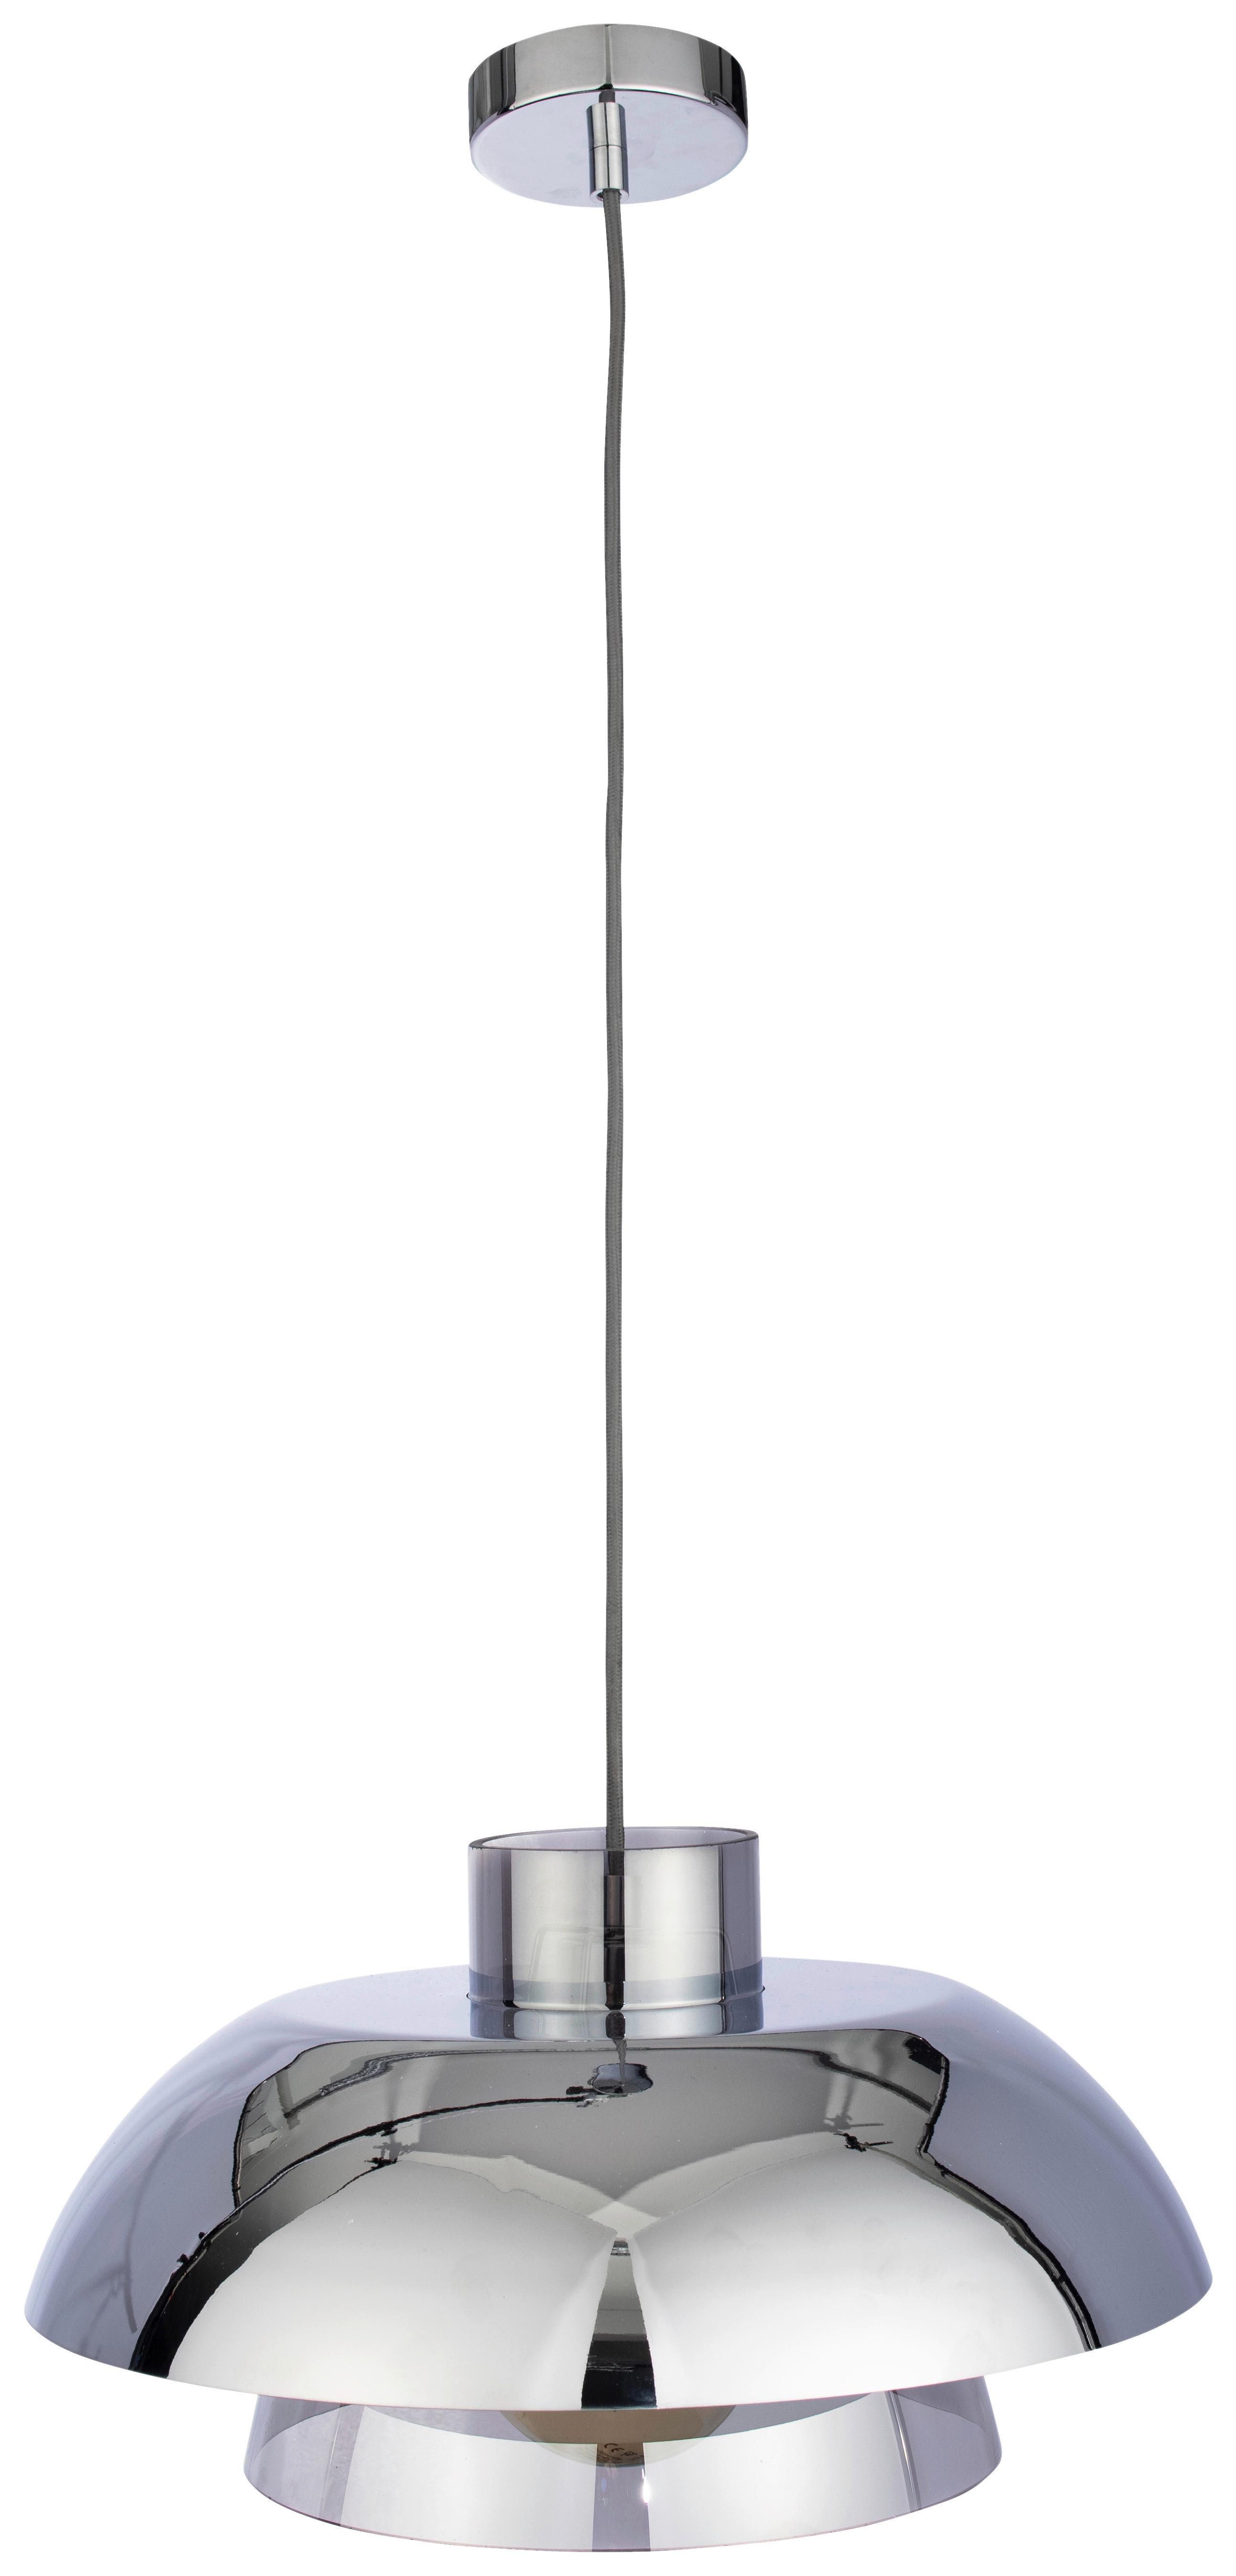 Viseča Svetilka Eleni - barve kroma/siva, Moderno, kovina/steklo (40/120cm) - Premium Living